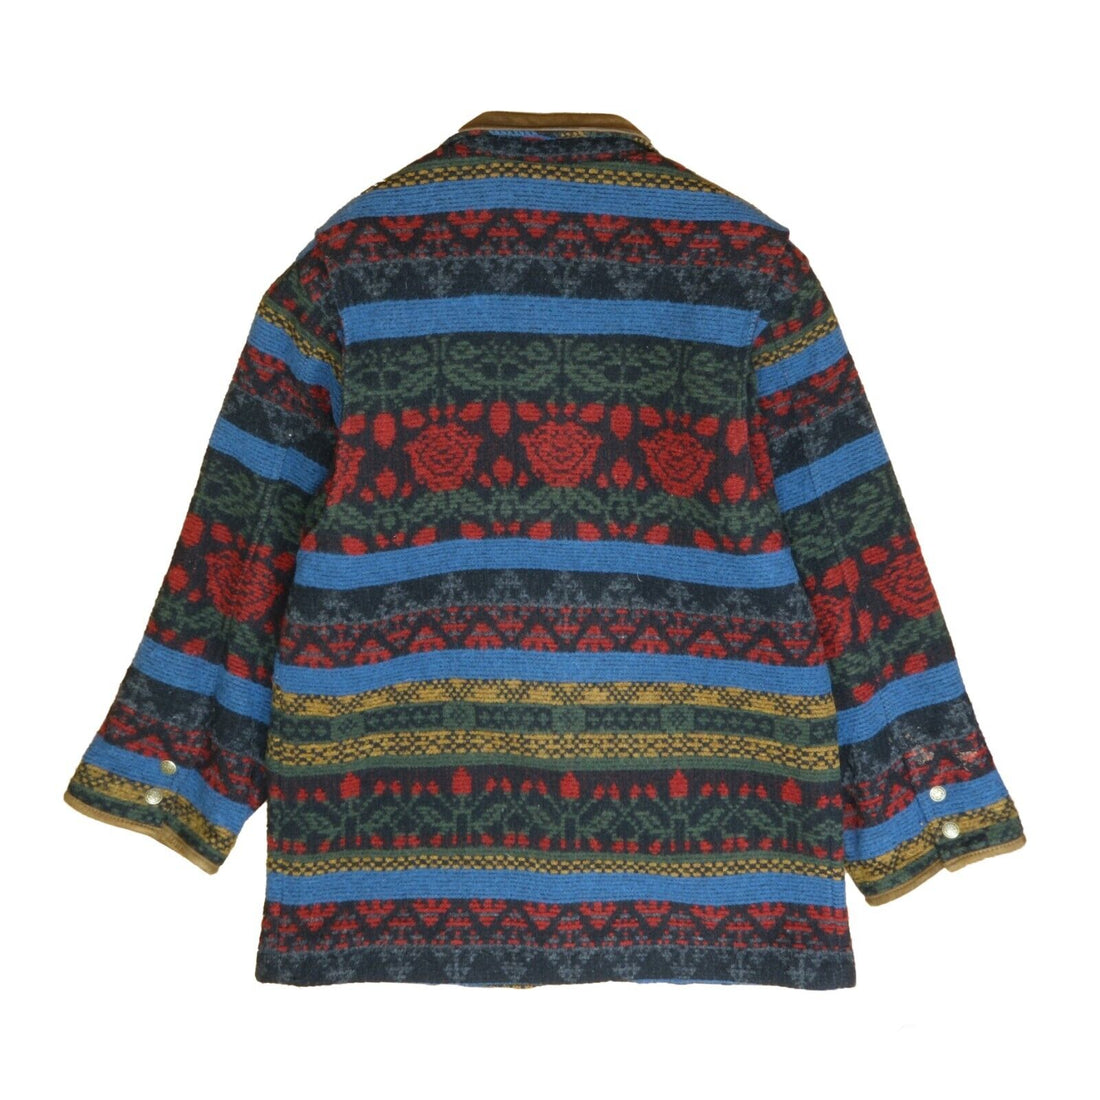 Vintage Woolrich Wool Coat Jacket Size Large Floral Aztec 90s